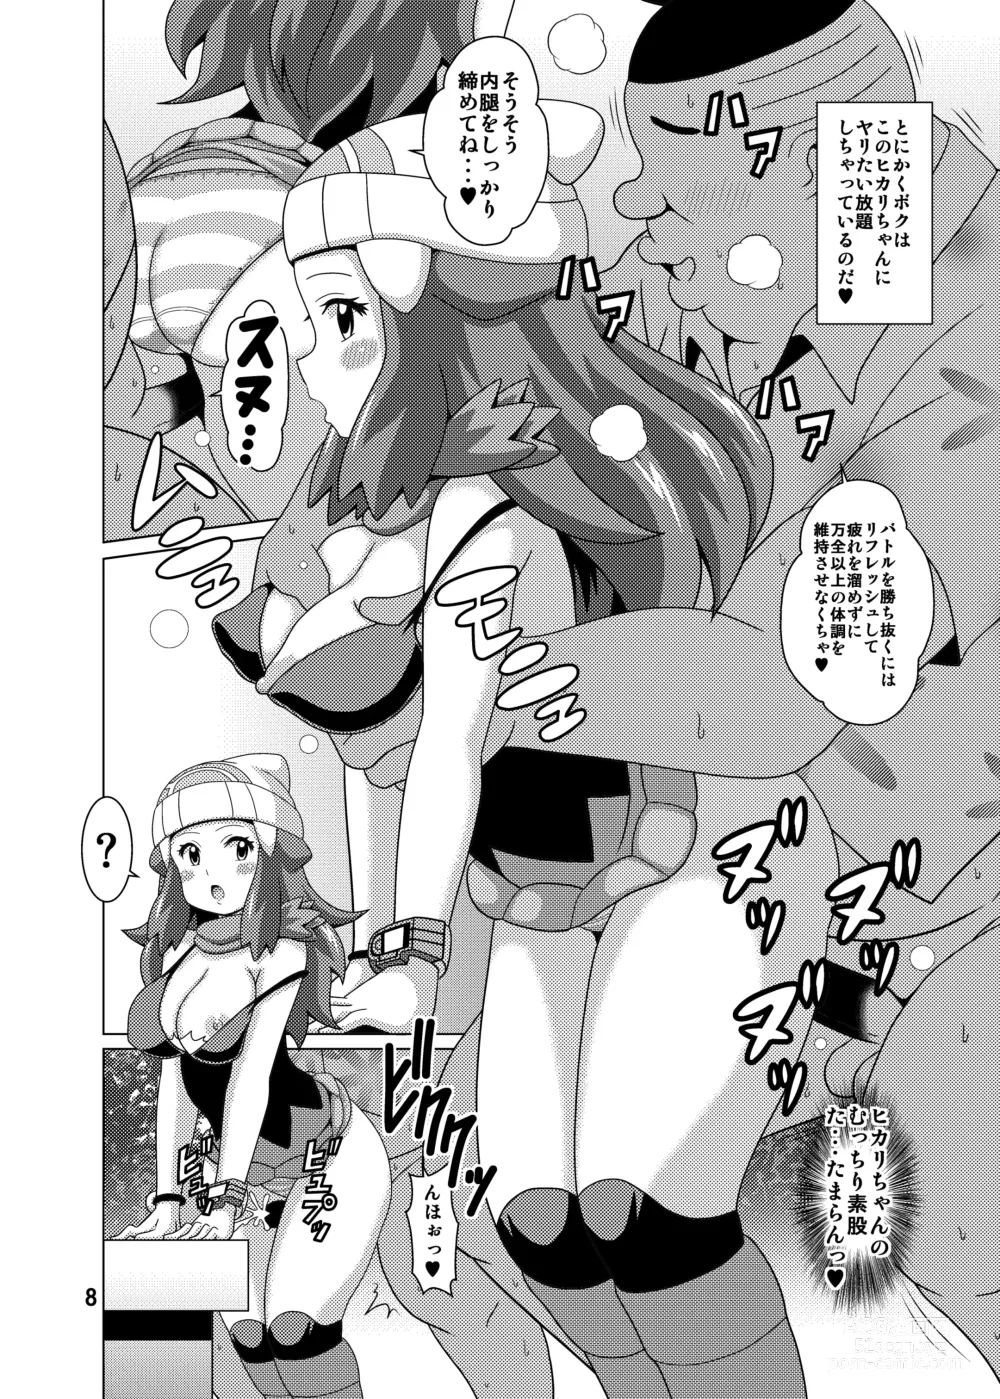 Page 8 of doujinshi Hikari Fure